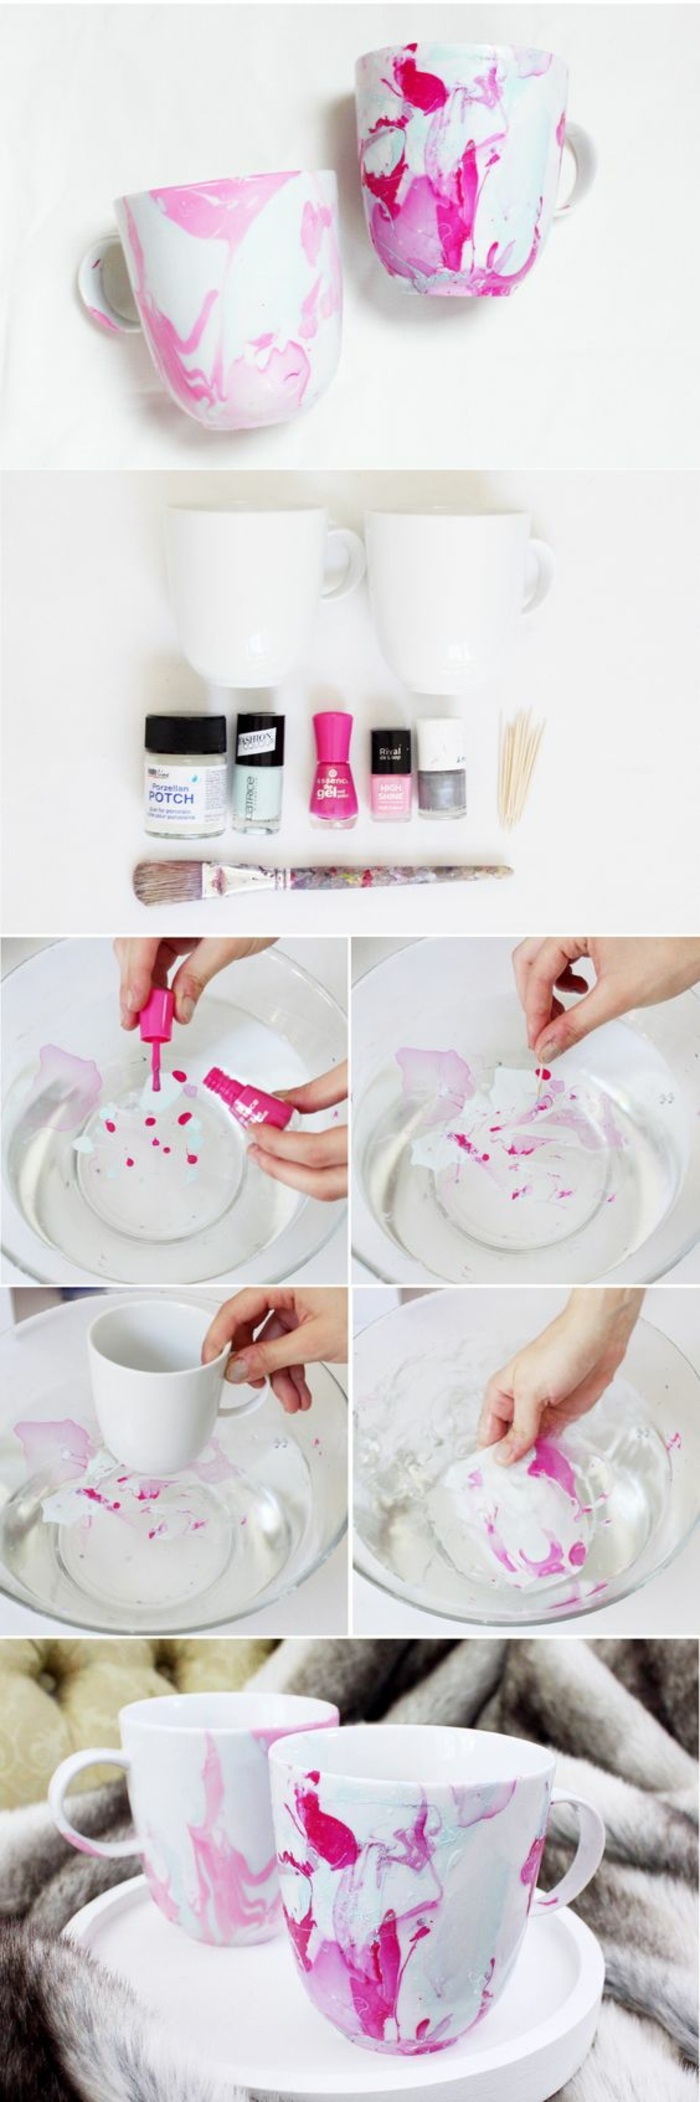 cómo decorar tazas con pintauñas, tazas de porcelana decoradas en bonitos colores, manualidades para regalar 